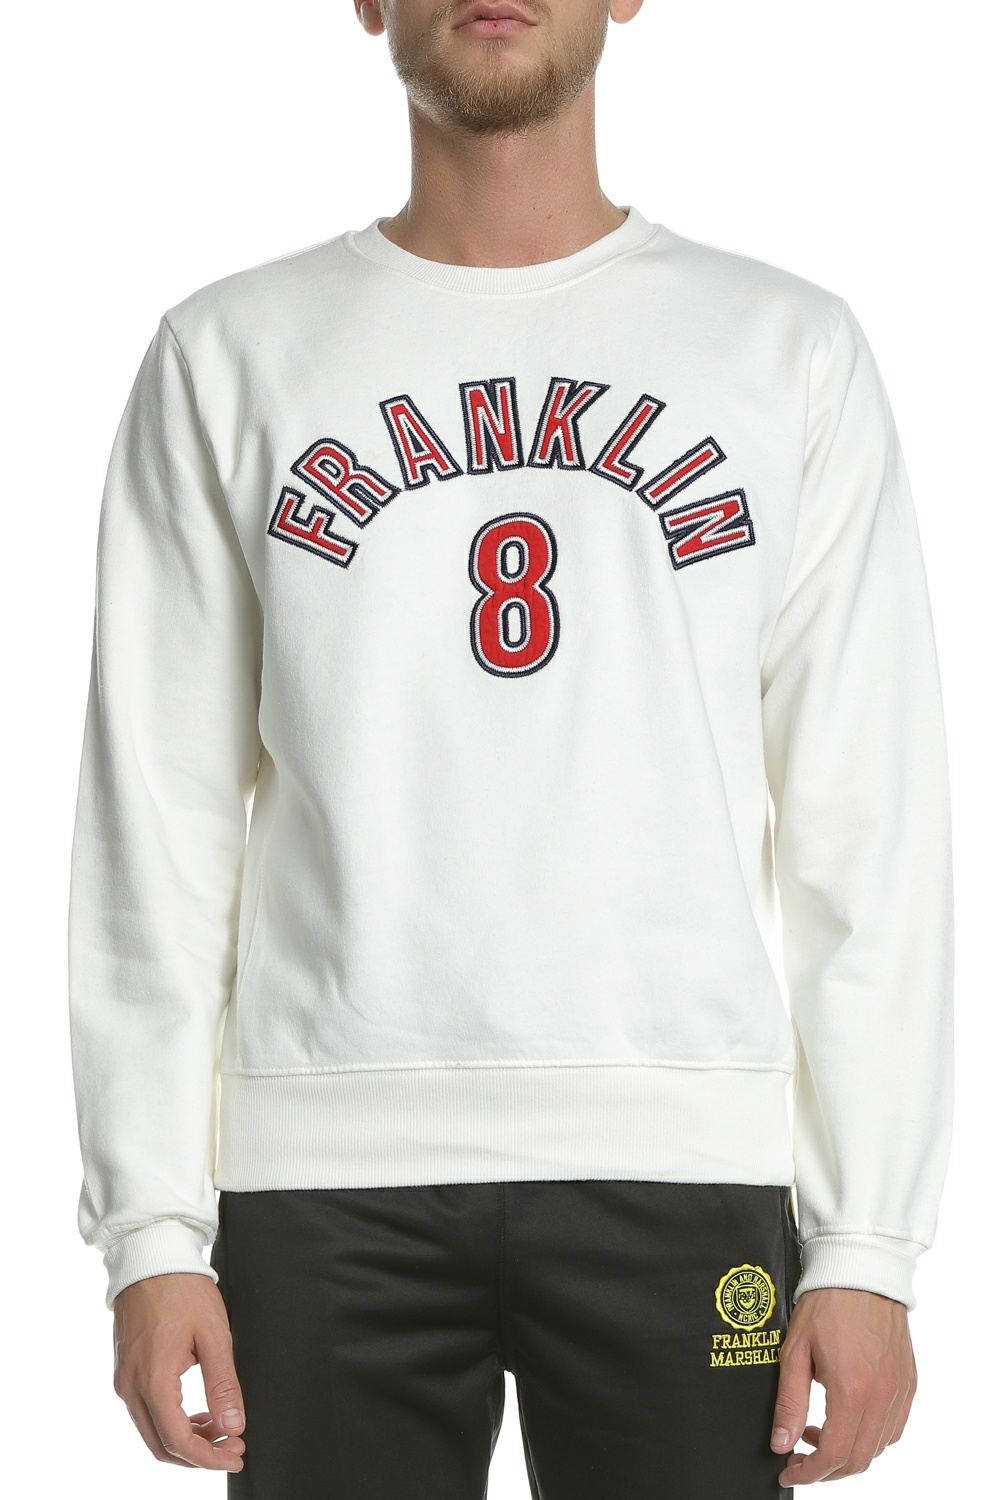 Ανδρικά/Ρούχα/Φούτερ/Μπλούζες FRANKLIN & MARSHALL - Ανδρική φούτερ μπλούζα FRANKLIN & MARSHALL λευκή